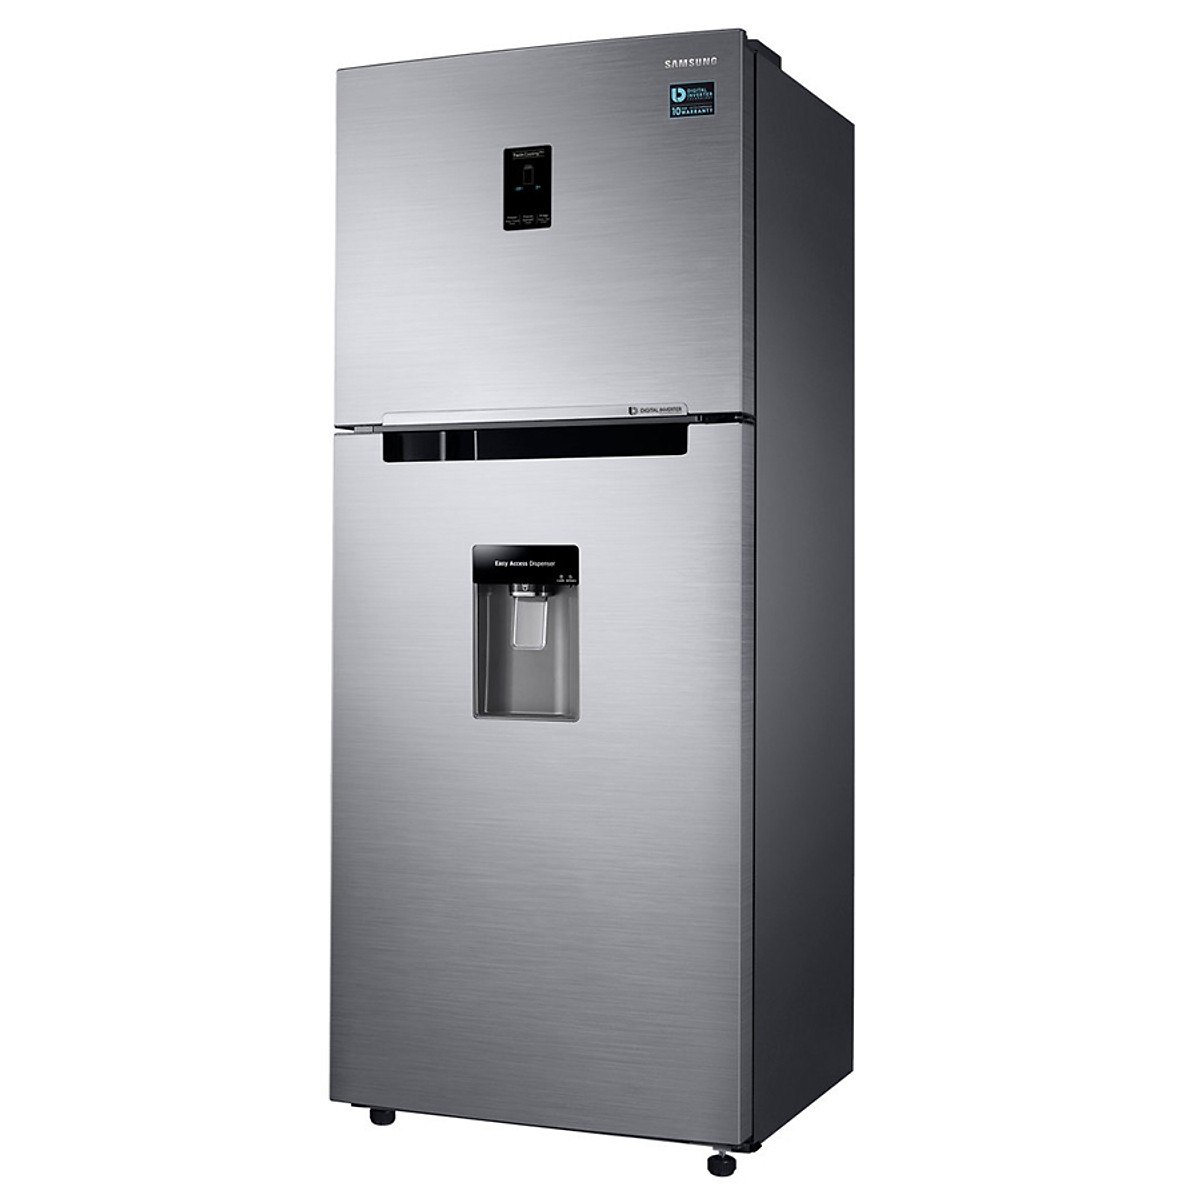 Tủ Lạnh Inverter Samsung Rt35k5982s8/Sv (360l) - Hàng Chính Hãng + Tặng Bình Đun Siêu Tốc